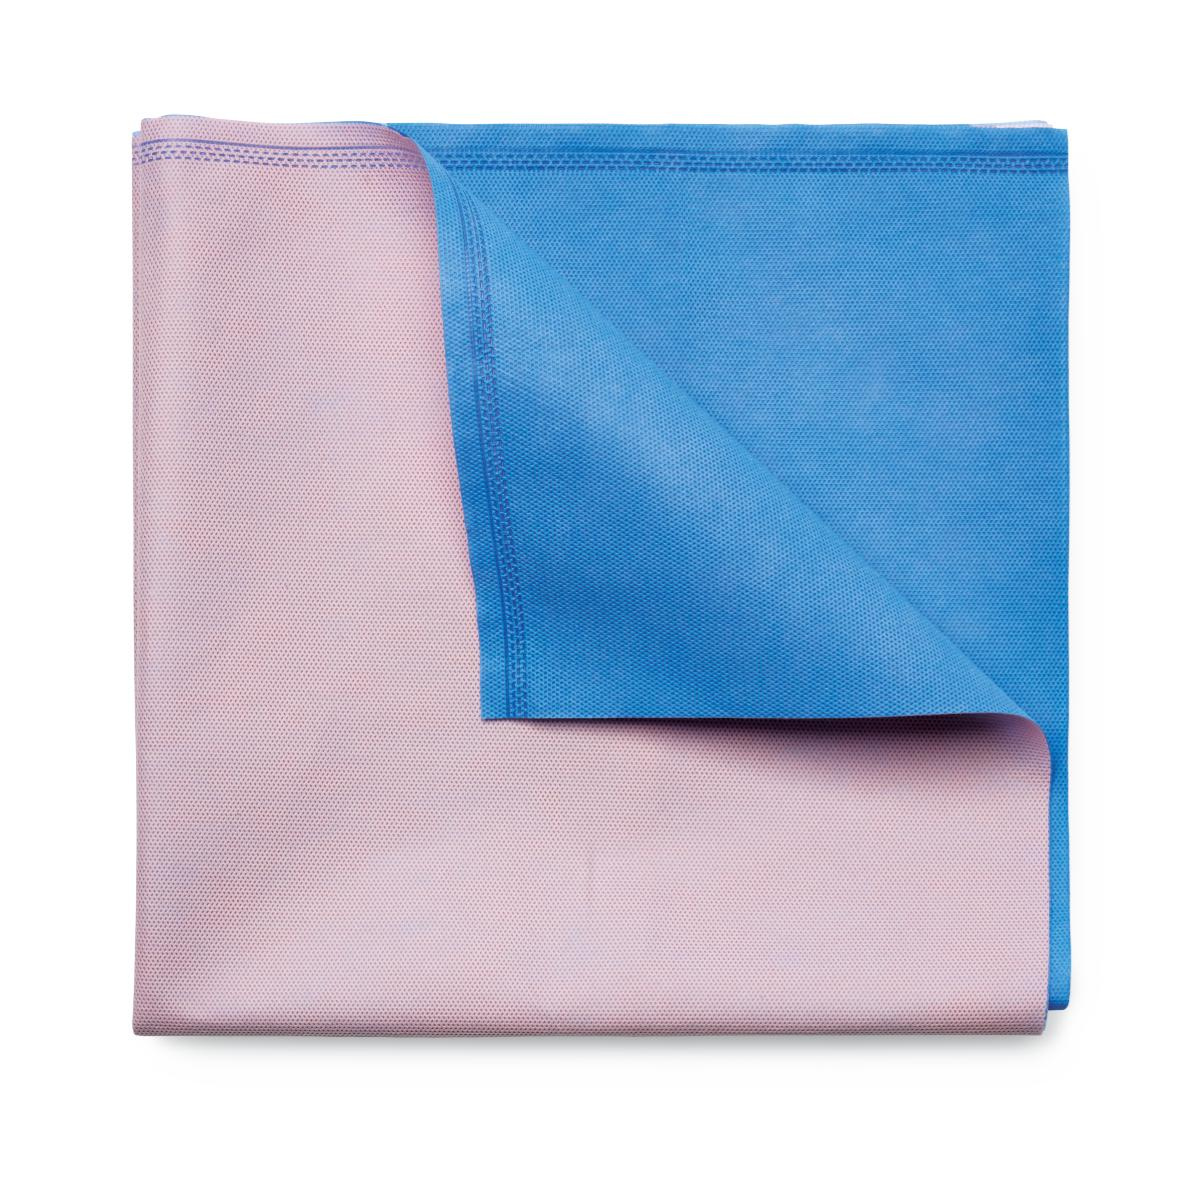 Gemini Sterilisation Wrap Dual Colour Pink/Blue 47gsm 61x61cm image 0